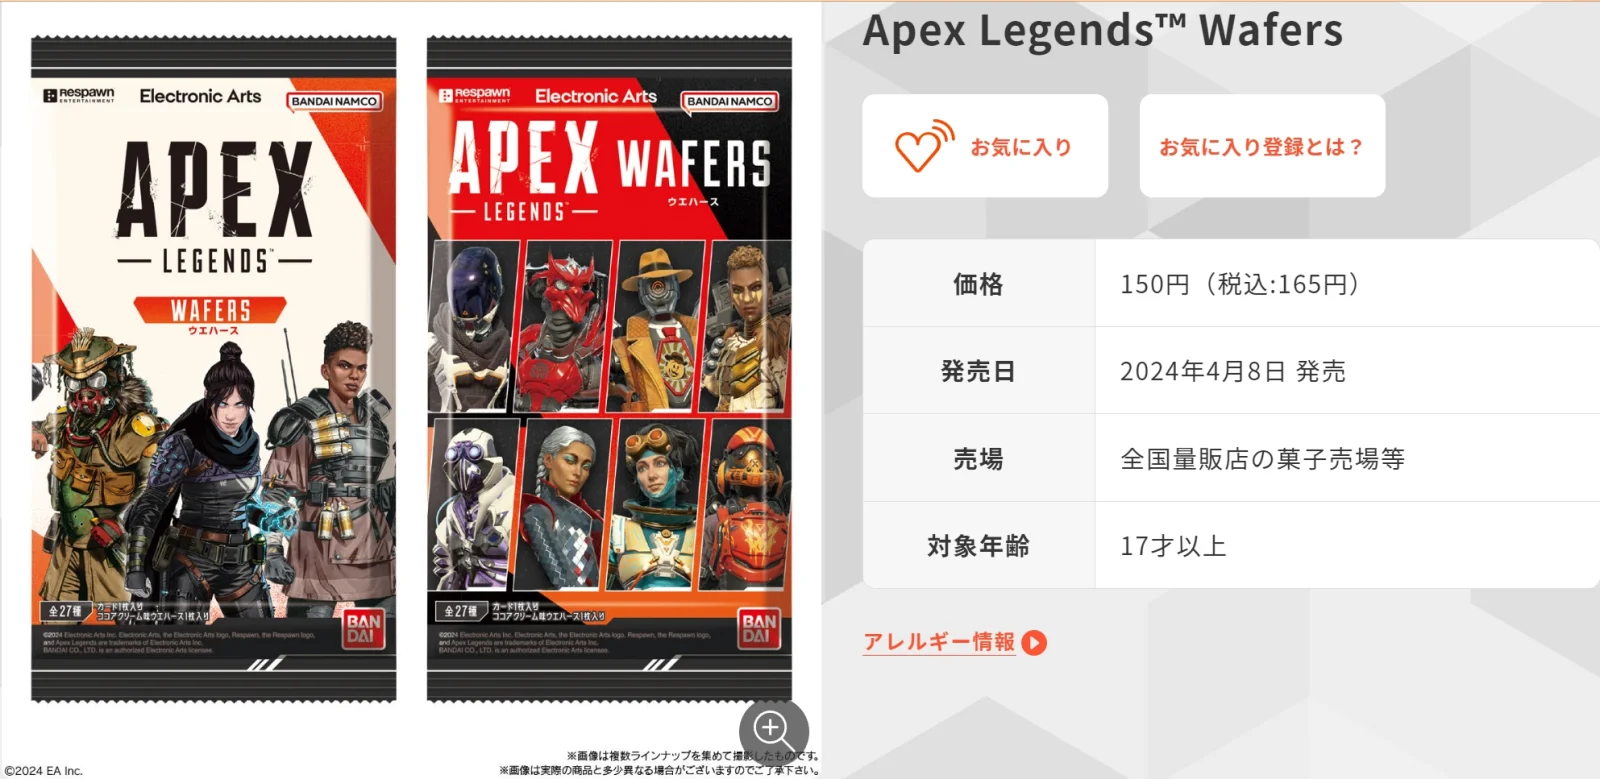 “Apex”威化饼干已在日本发售，包含带有金闪的收藏卡